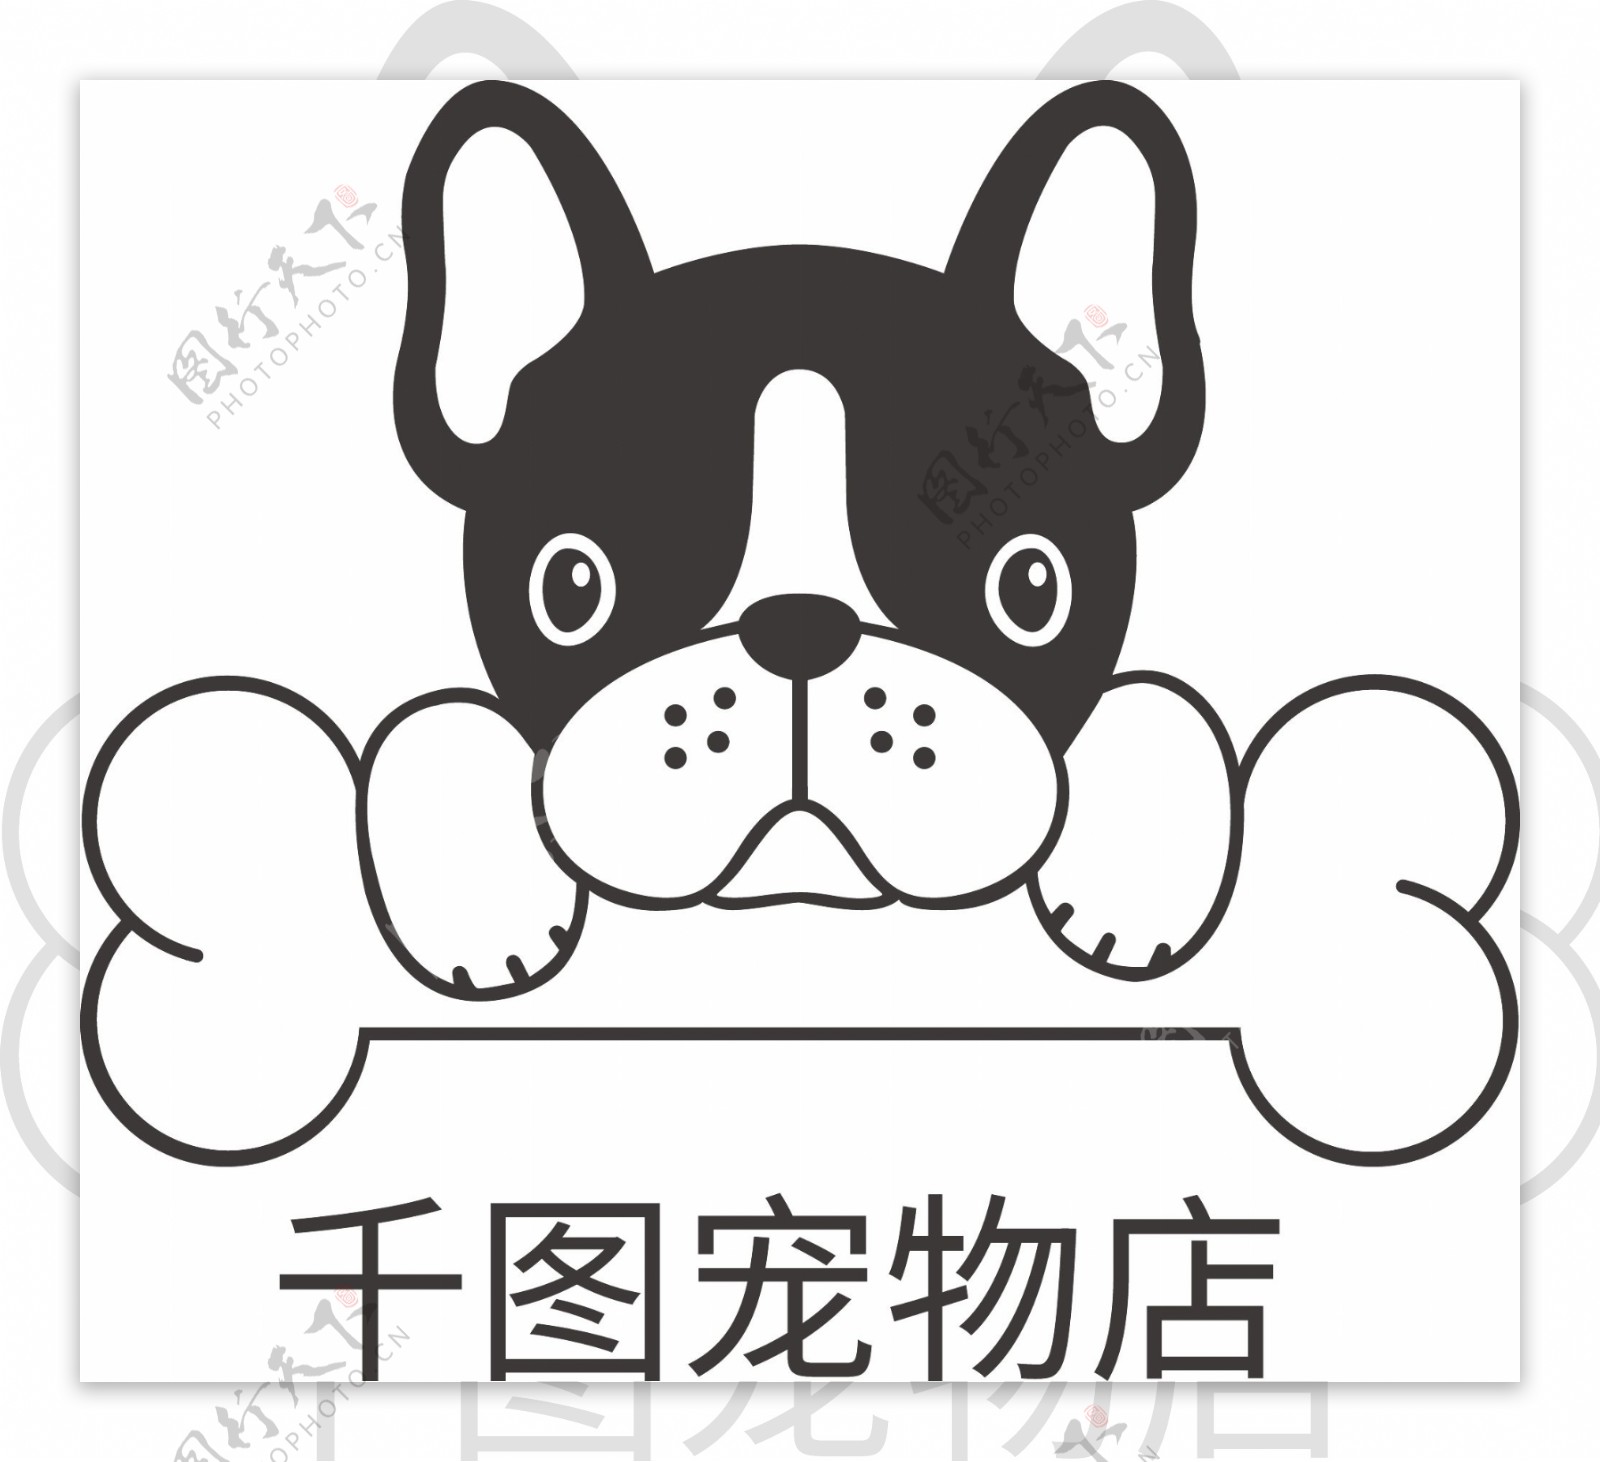 宠物店标志logo